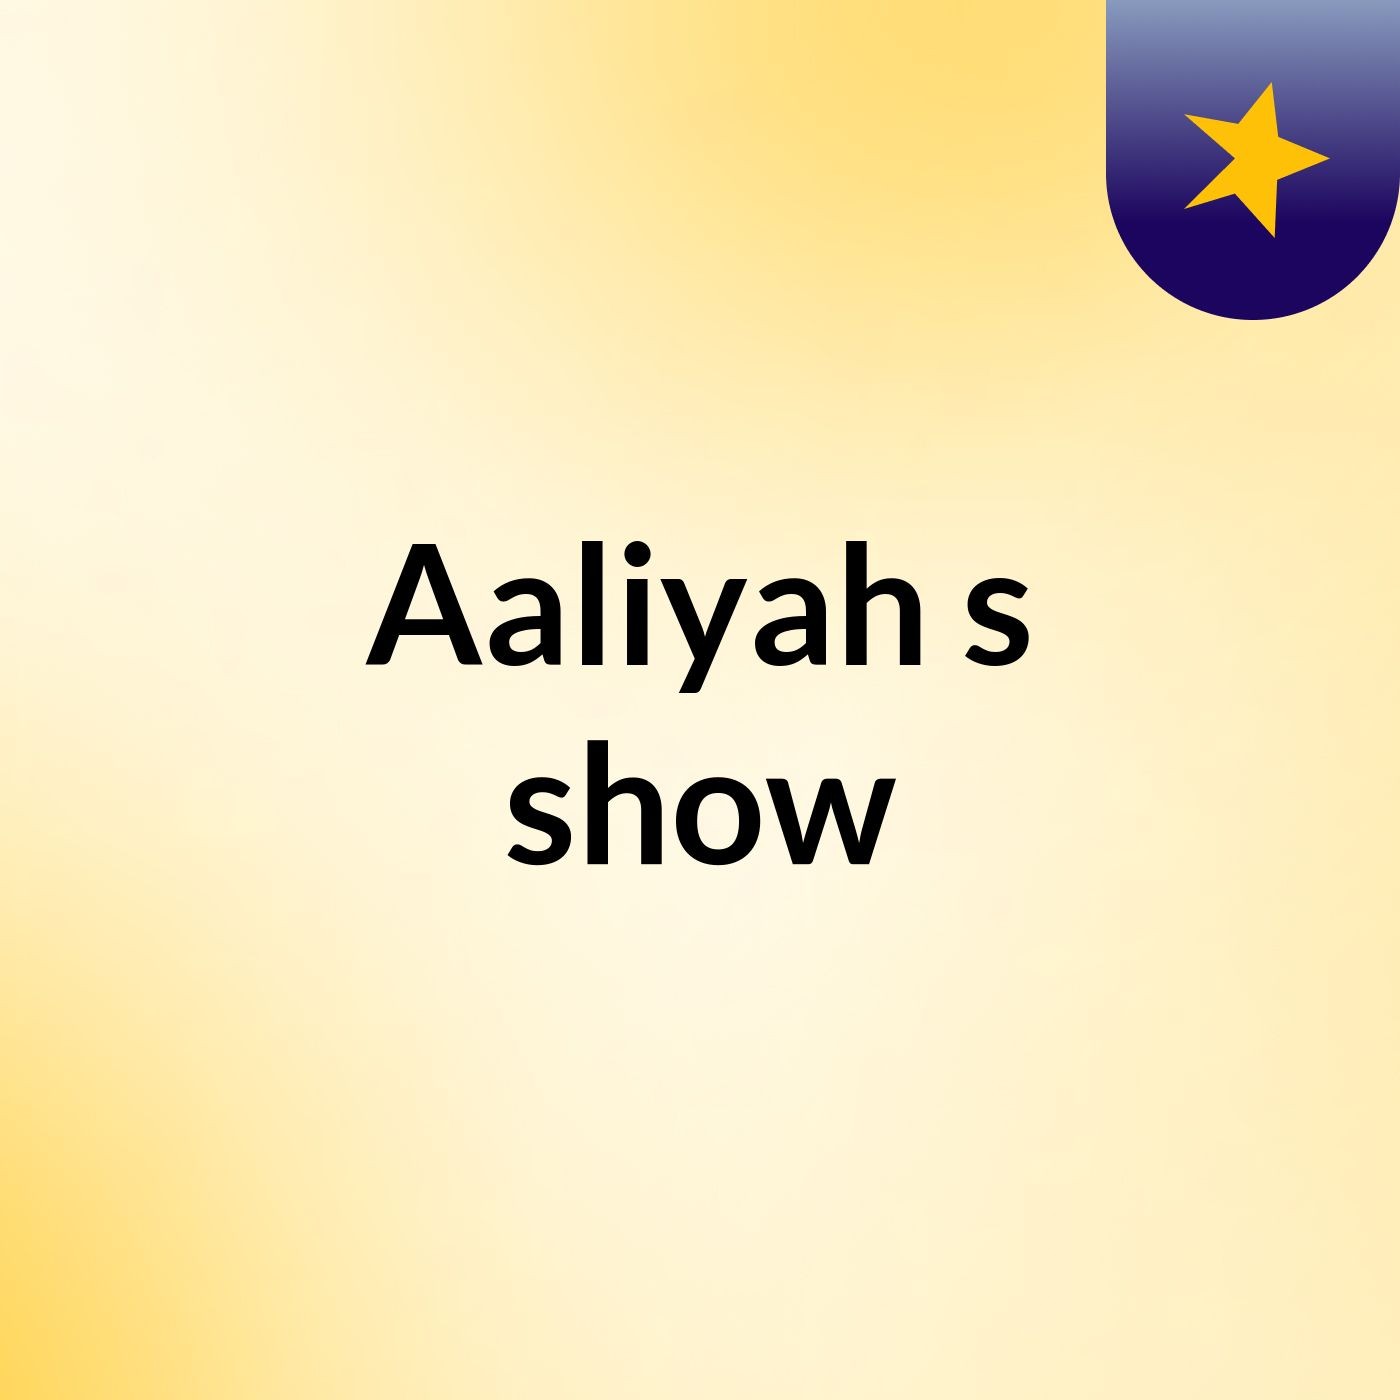 Aaliyah's show